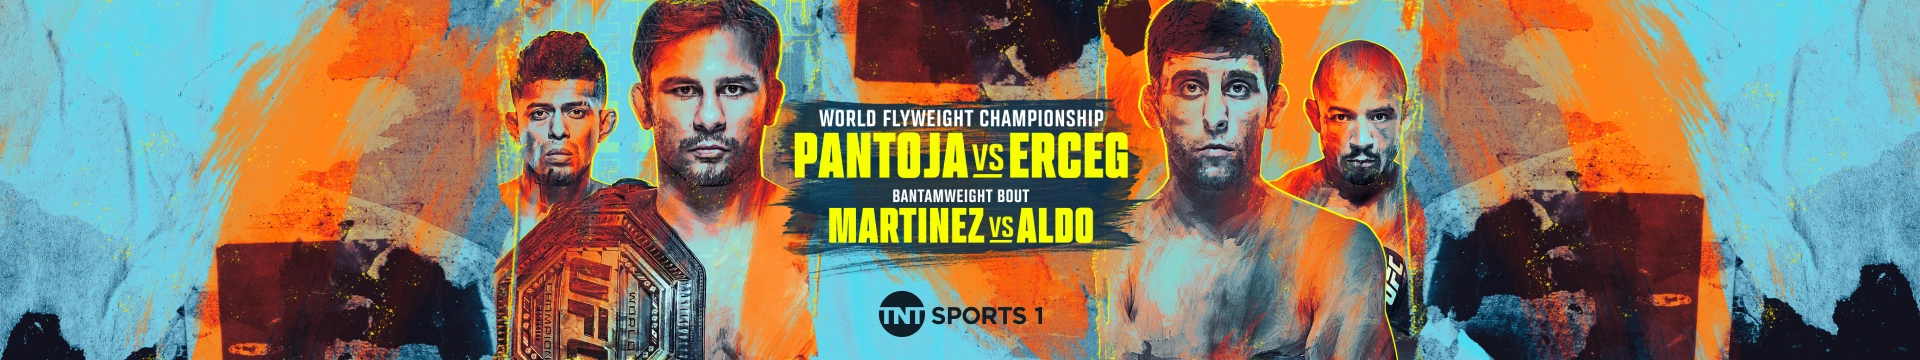 UFC 301 World flyweight championship Pantoja vs Erceg and Bantamweight bout Martinez vs Aldo on TNT Sports 1